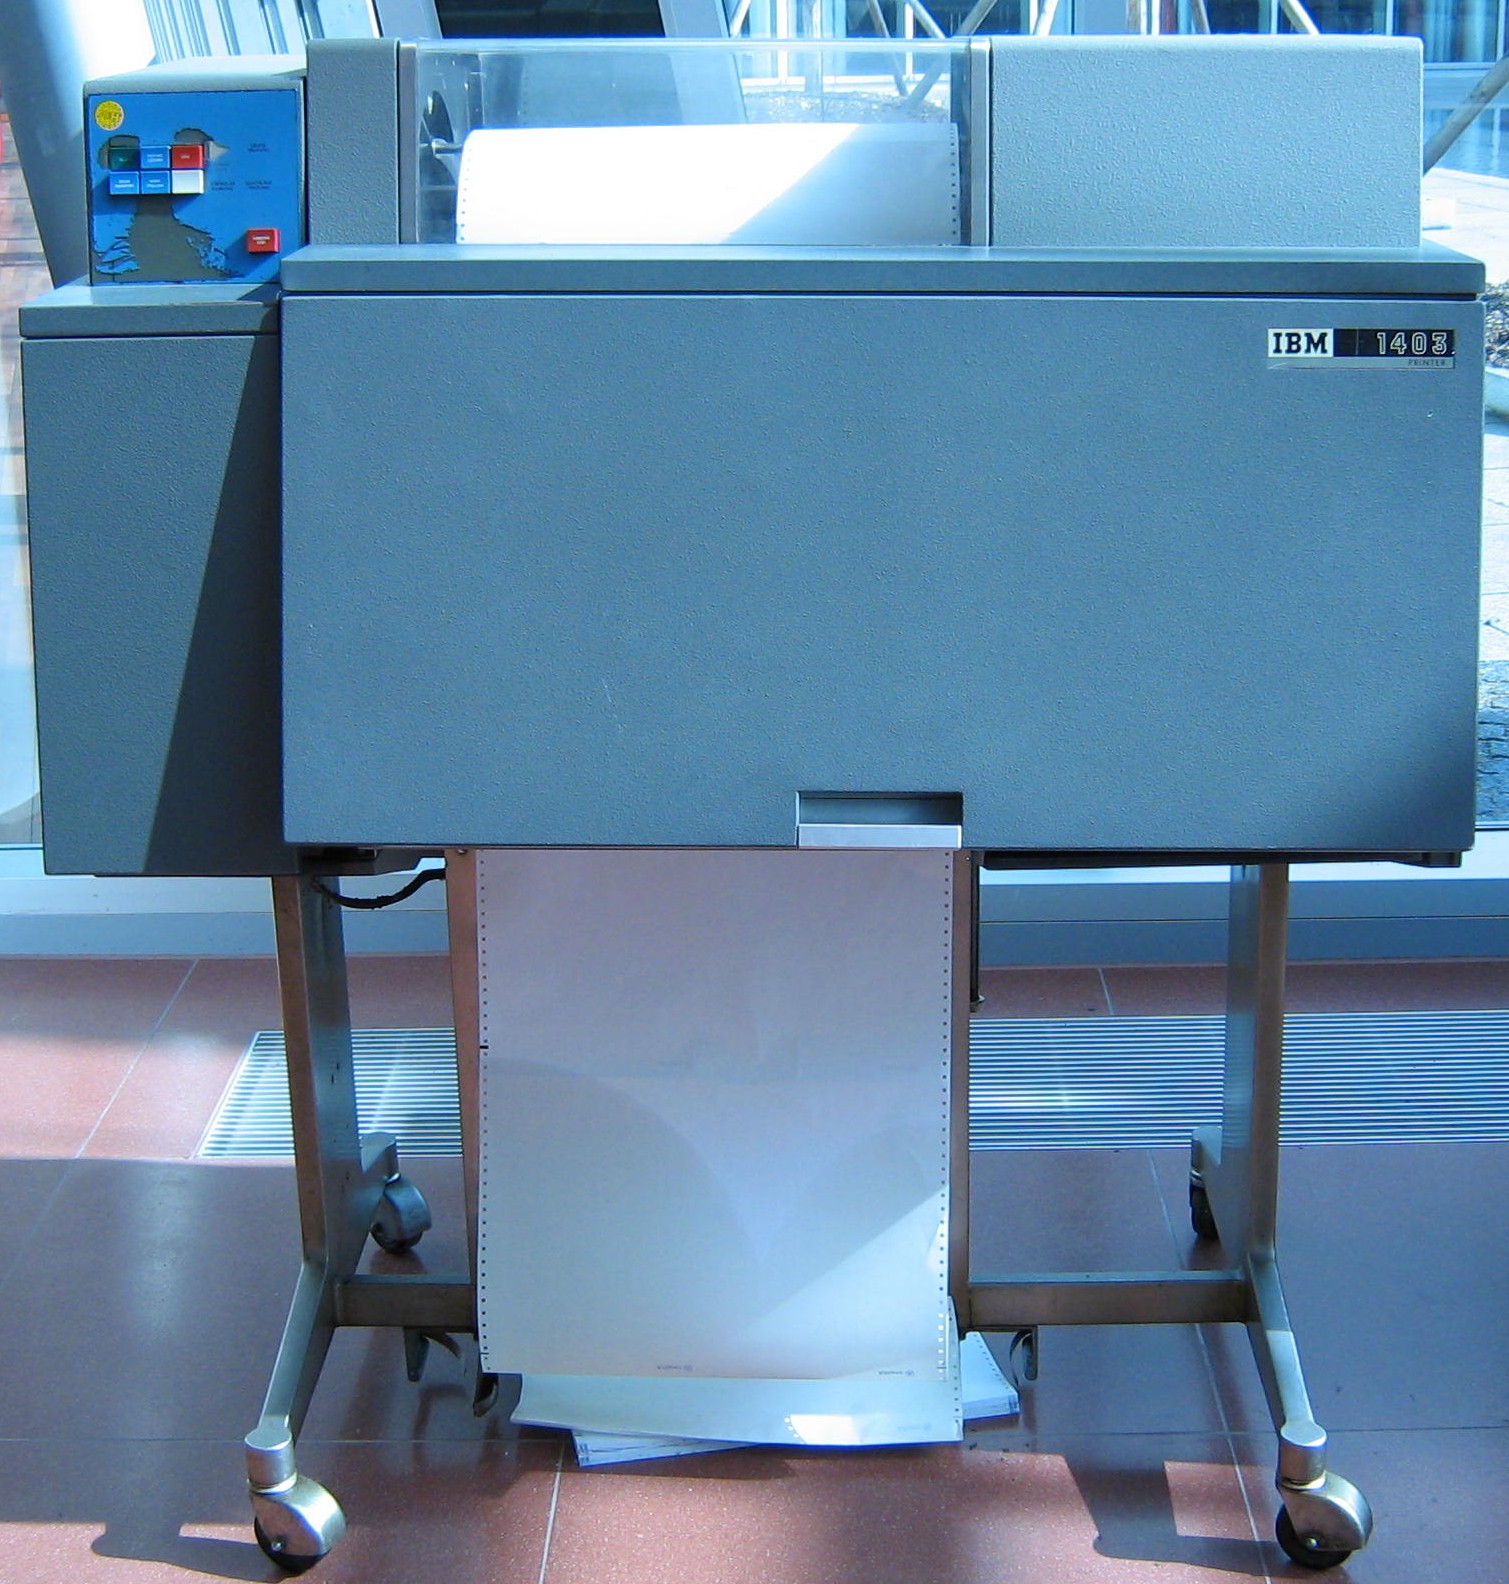 IBM 1403 line printer